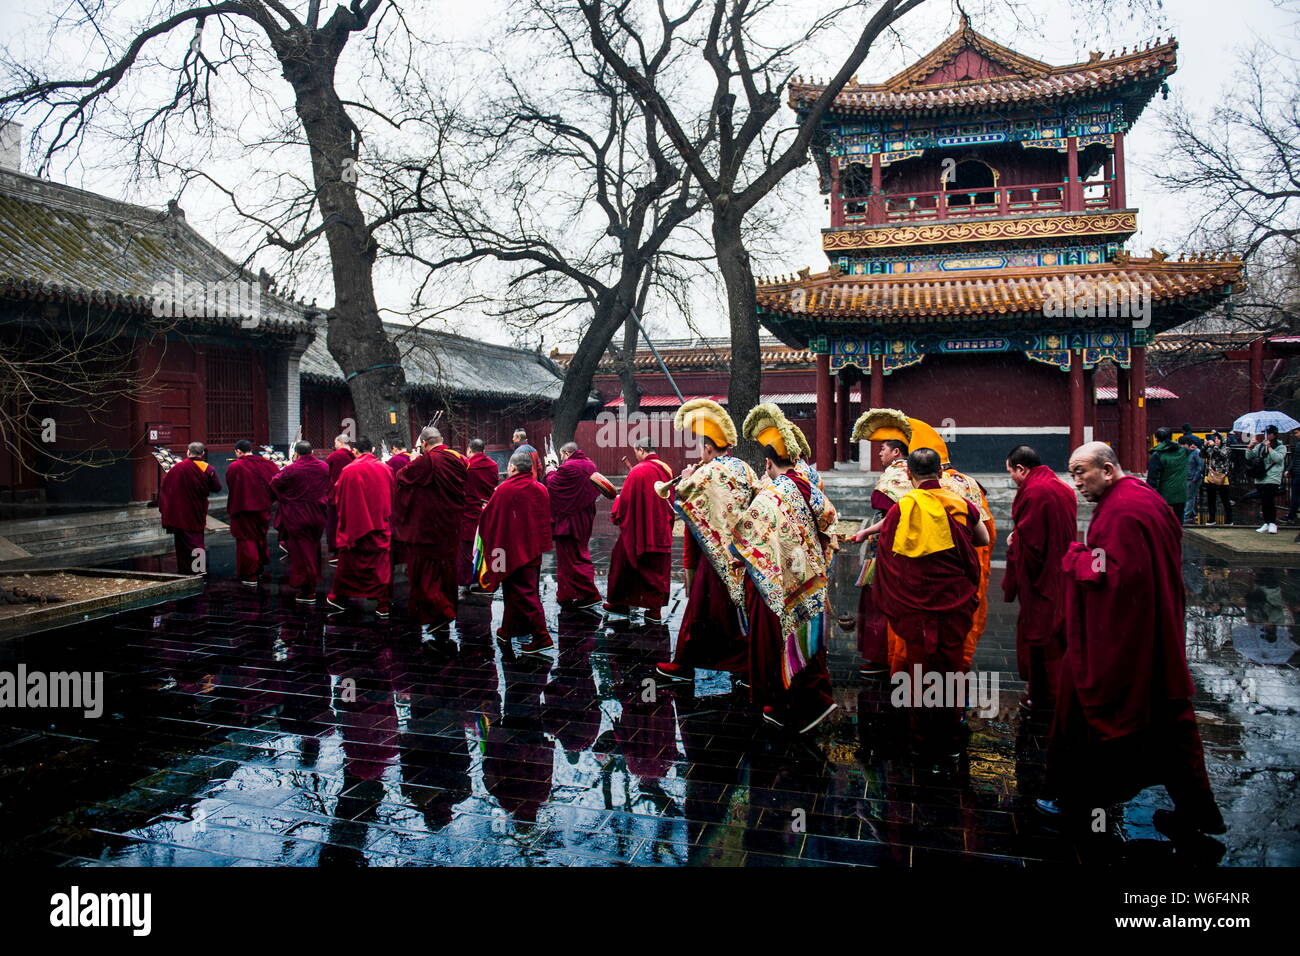 Les lamas sont vus à la Temple de Yonghe, également connu sous le nom de la Lamaserie Yonghe ou Temple du Lama, durant une chute de neige à Beijing, Chine, 17 mars 2018. Banque D'Images